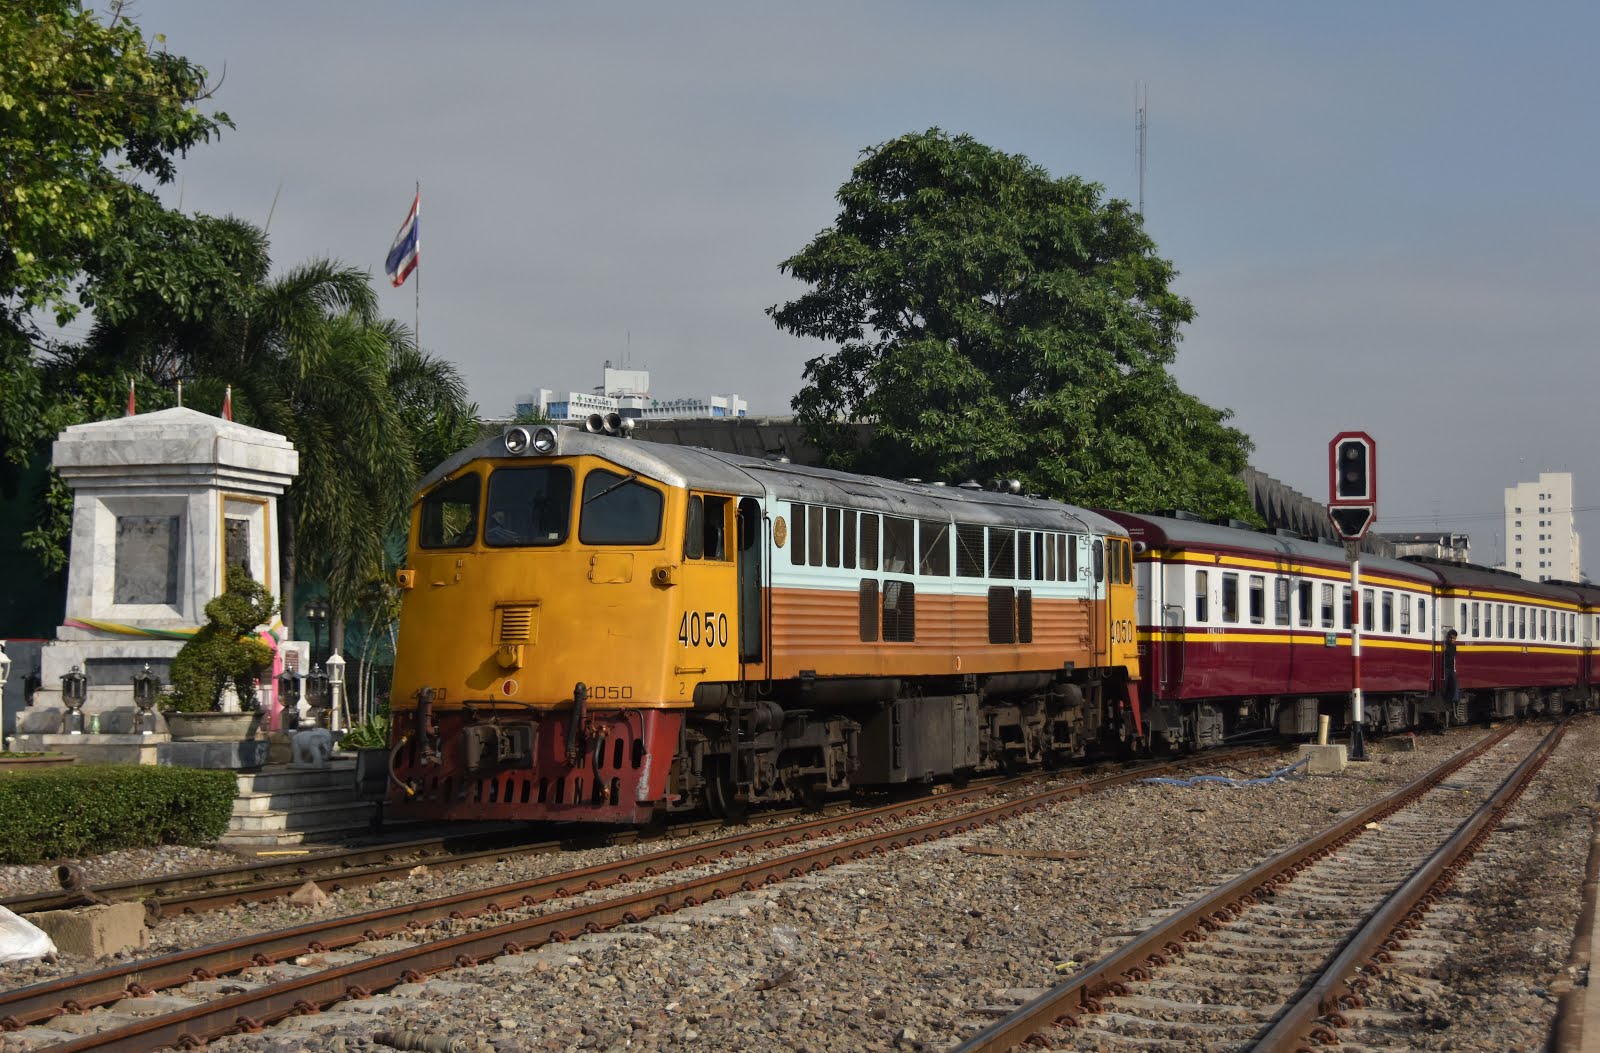 Незабываемая достопримечательность Таиланда: поездка на раритетном поезде